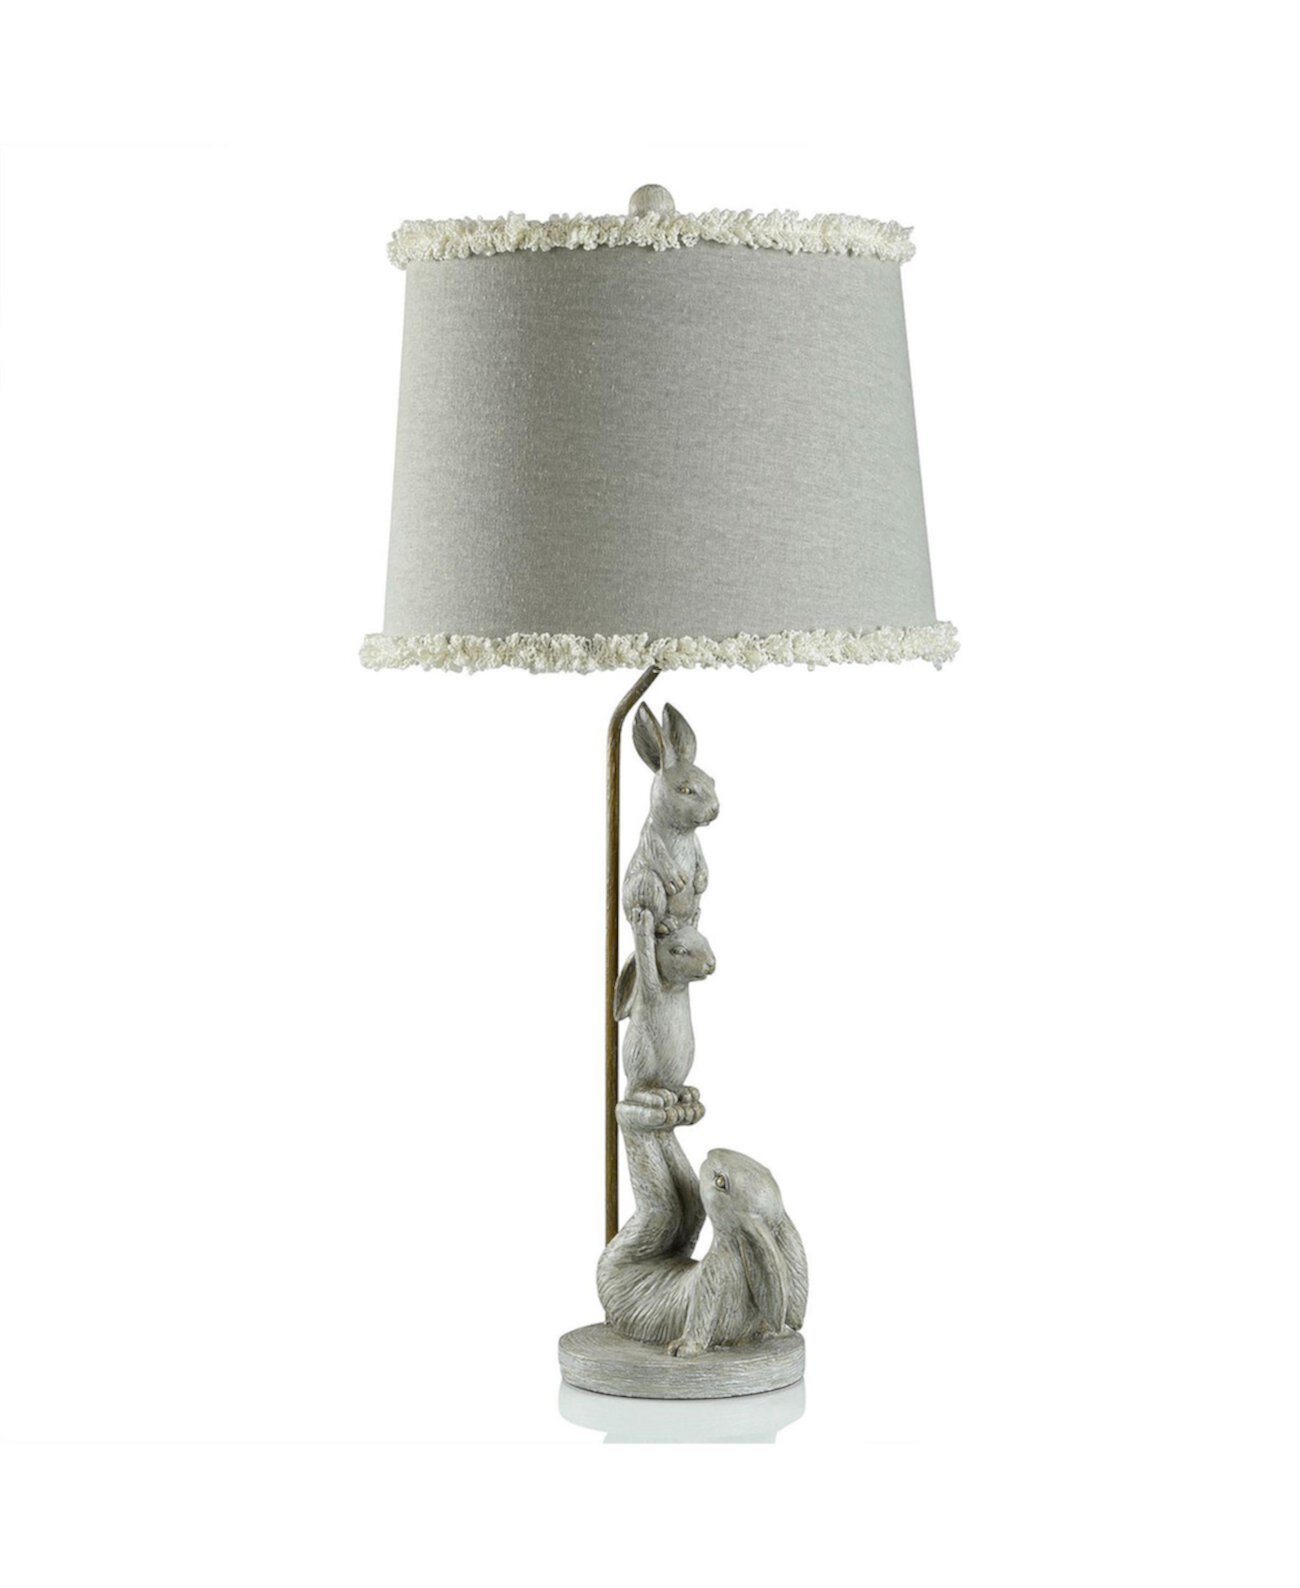 Настольная лампа Chrysta Cream Charming Bunnies размером 32,5 дюйма с рюшным абажуром StyleCraft Home Collection